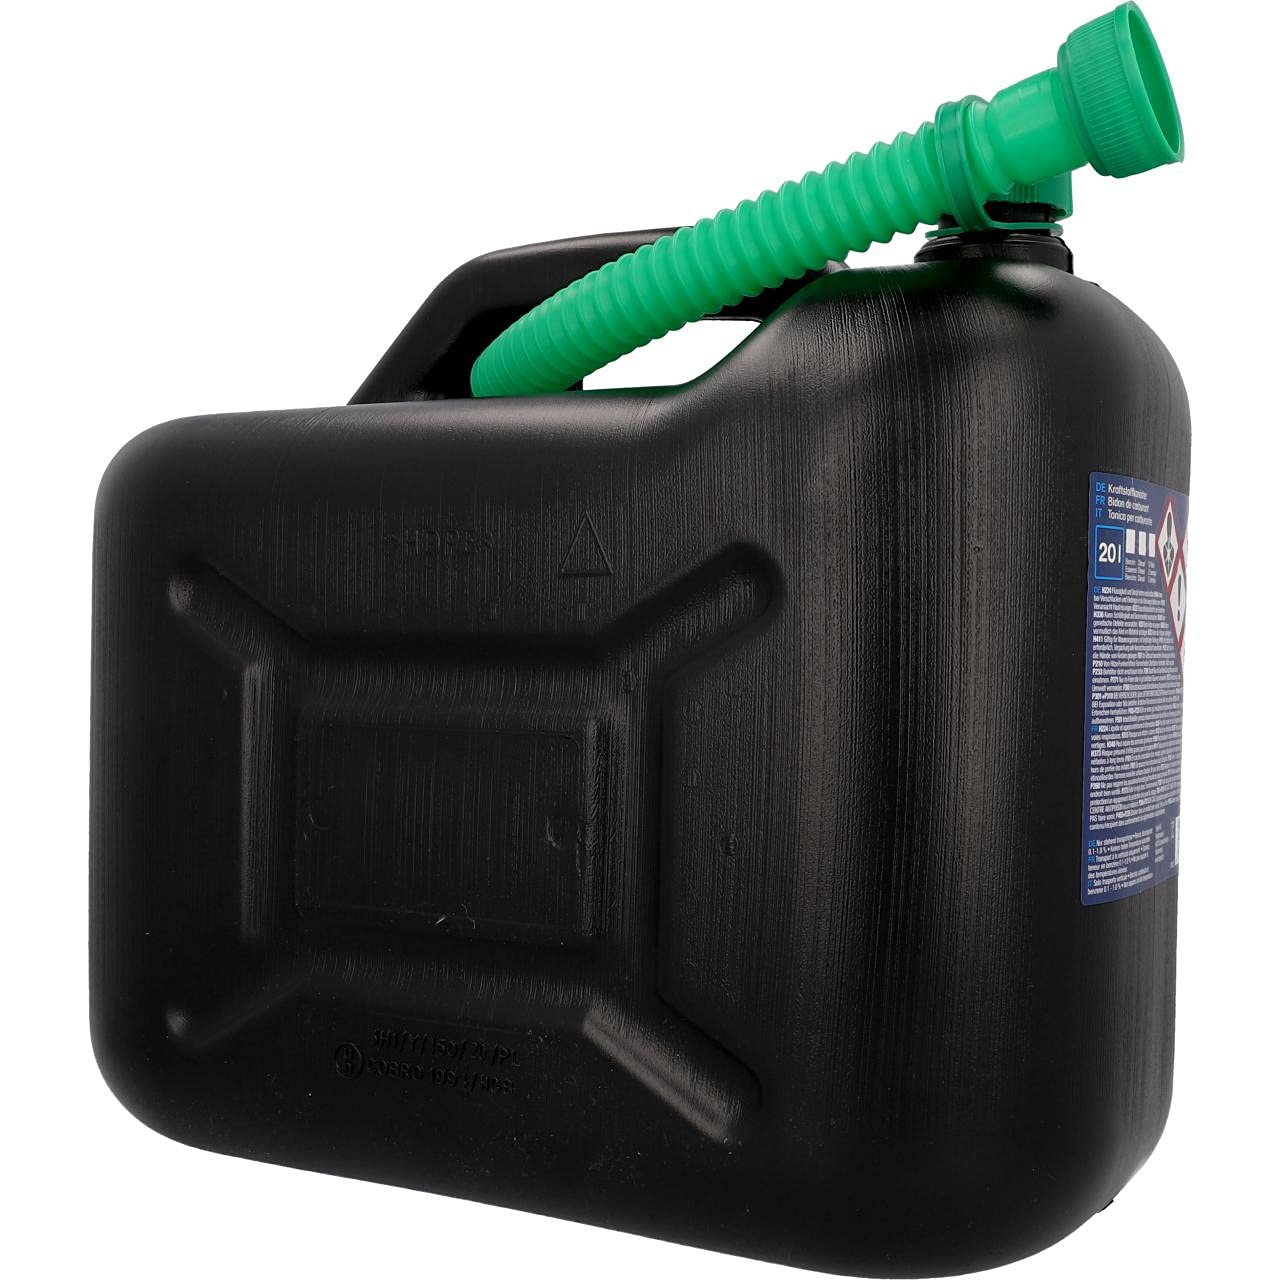 cartrend Benzinkanister, 20 l, robuster Kunststoff, schwarz, Benzinkanister für Treibstoff aller Art, mit UN Zulassung, inklusive Ausgießer von cartrend